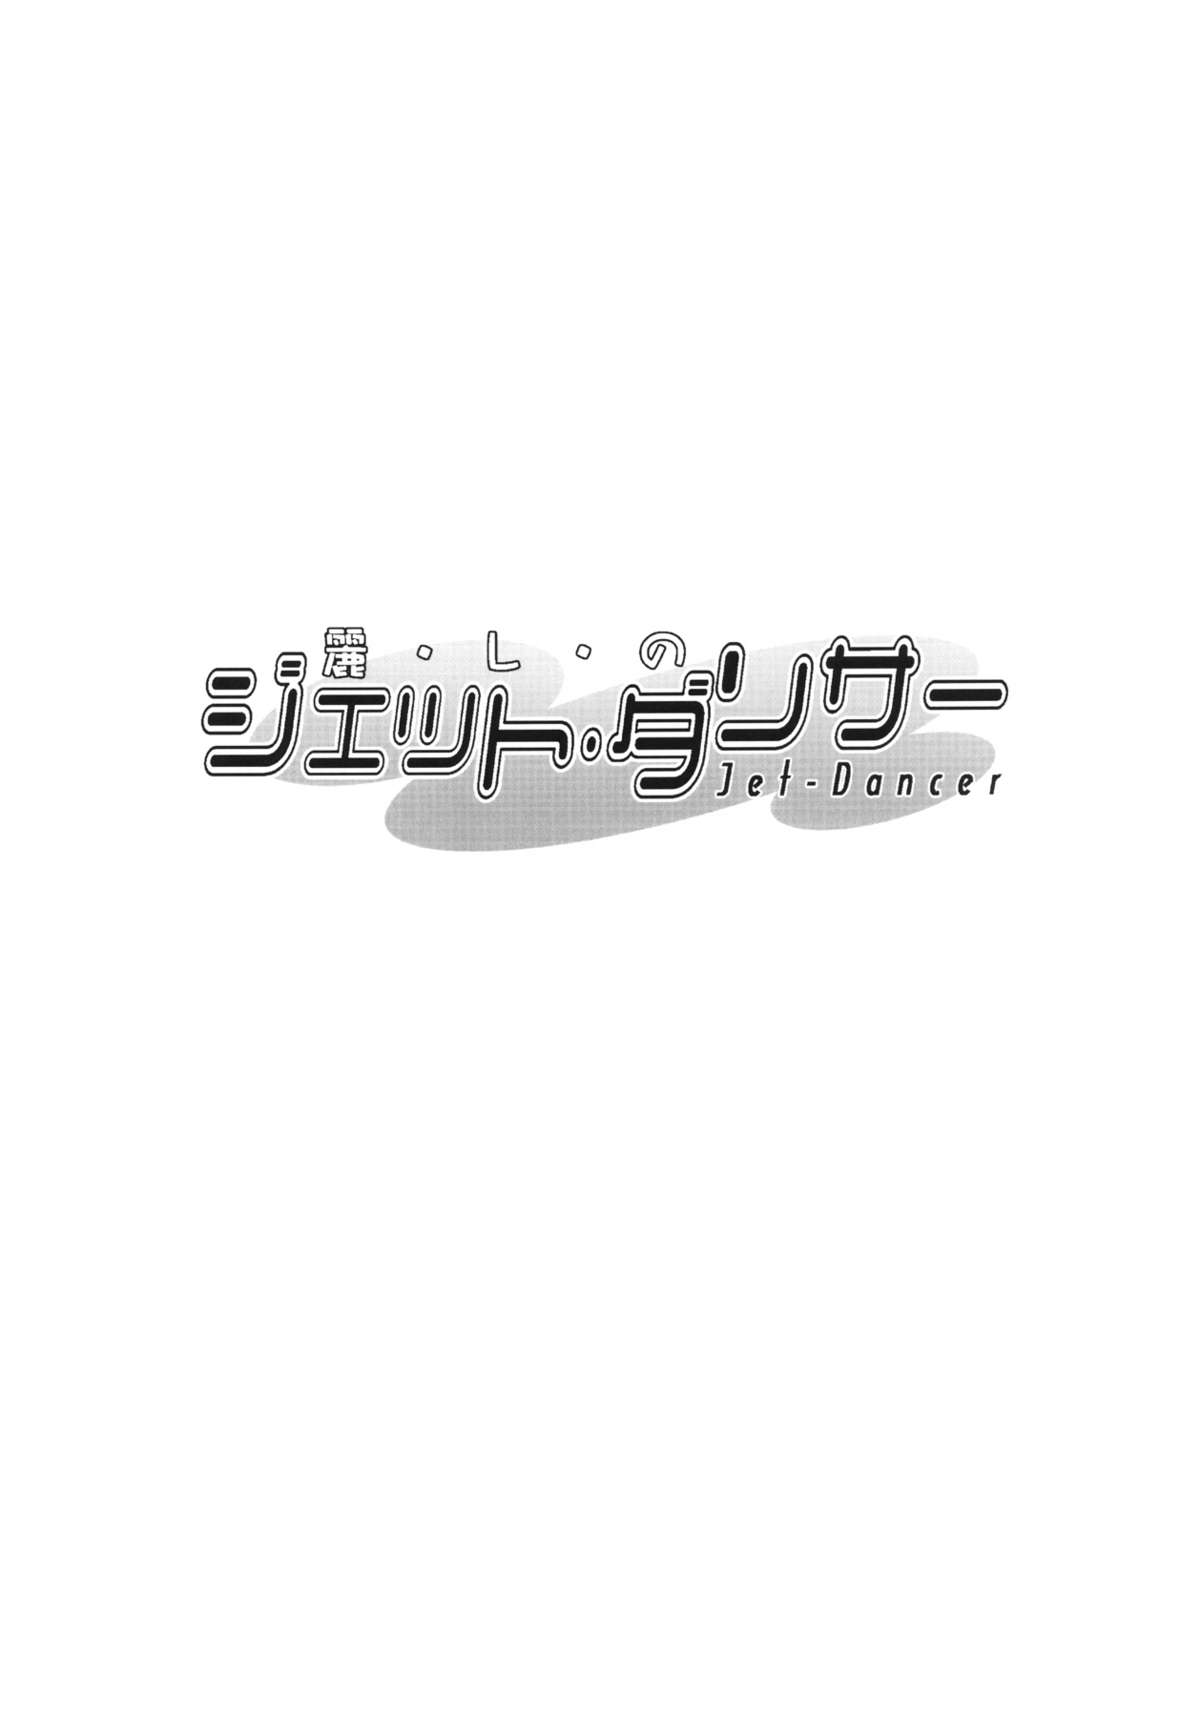 [PATRICIDE] Uruwashi no Jet. Dancer (WILD ARMS) - MasterBloodfer 